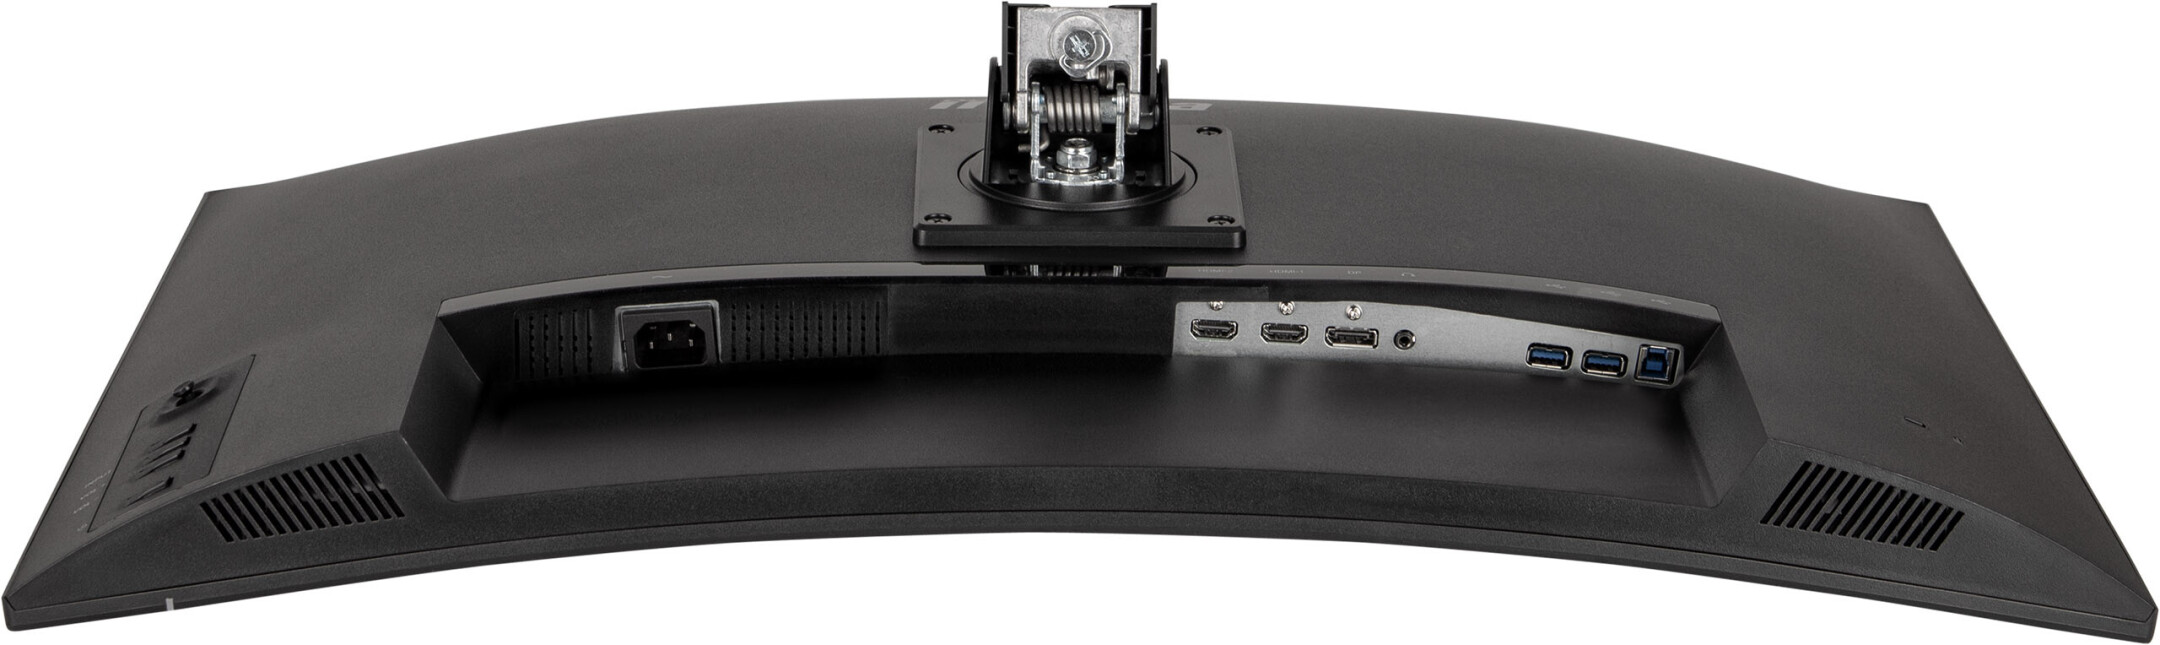 GCB3280QSU-B1 - Monitor curvo para juegos - VA LED - 32 pulgadas - WQHD  2560x1440p - 165hz - 0.2ms - HDR 